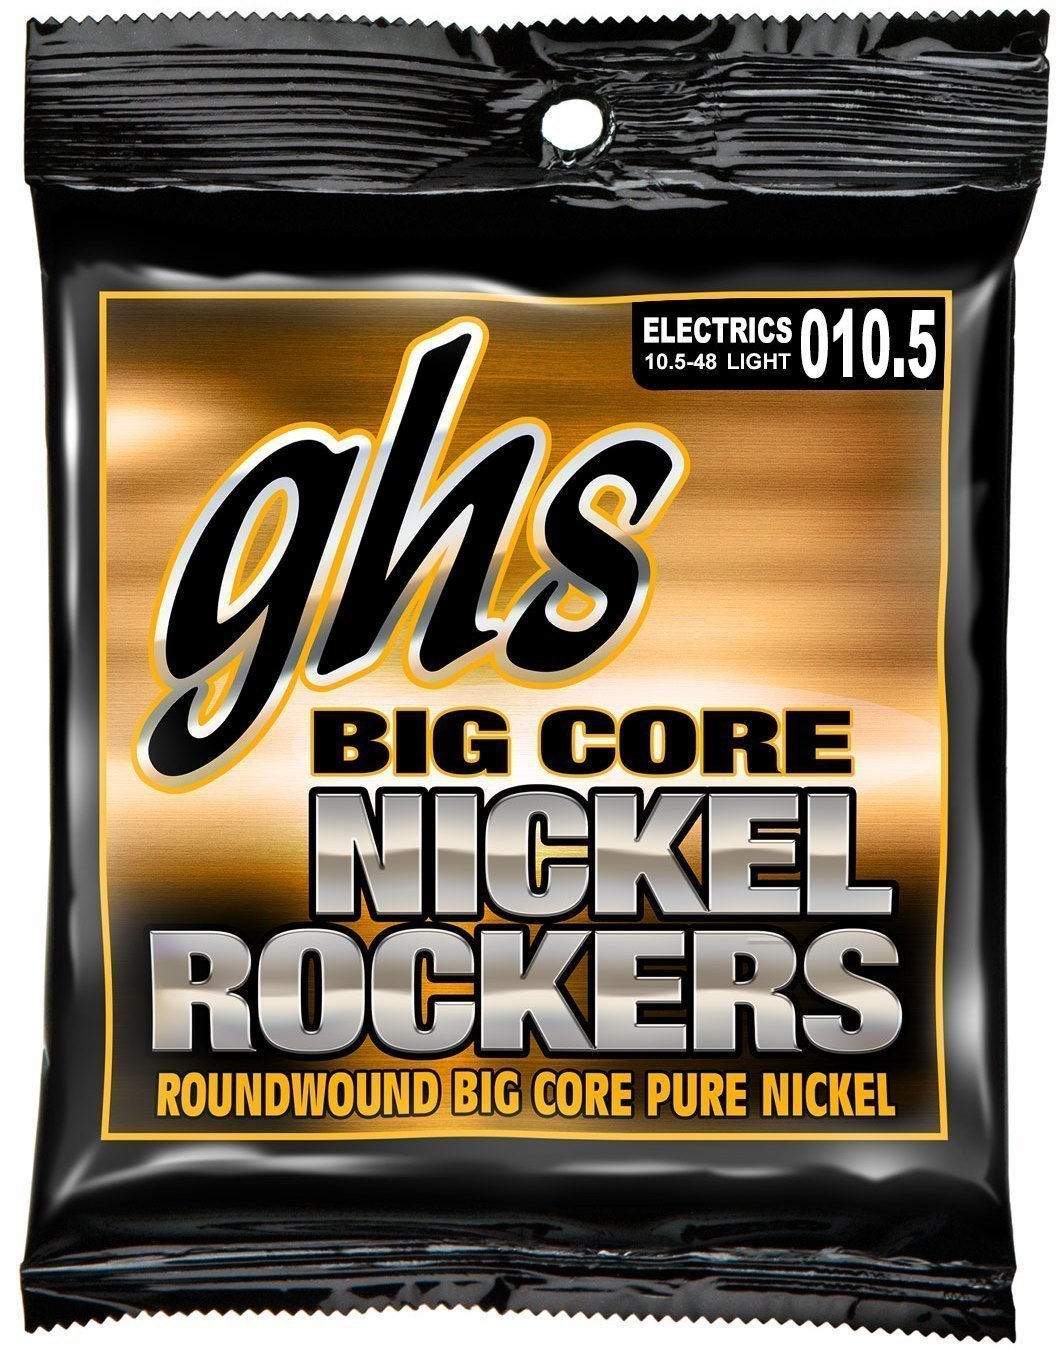 Snaren voor elektrische gitaar GHS Big Core Nickel Rockers 10,5-48